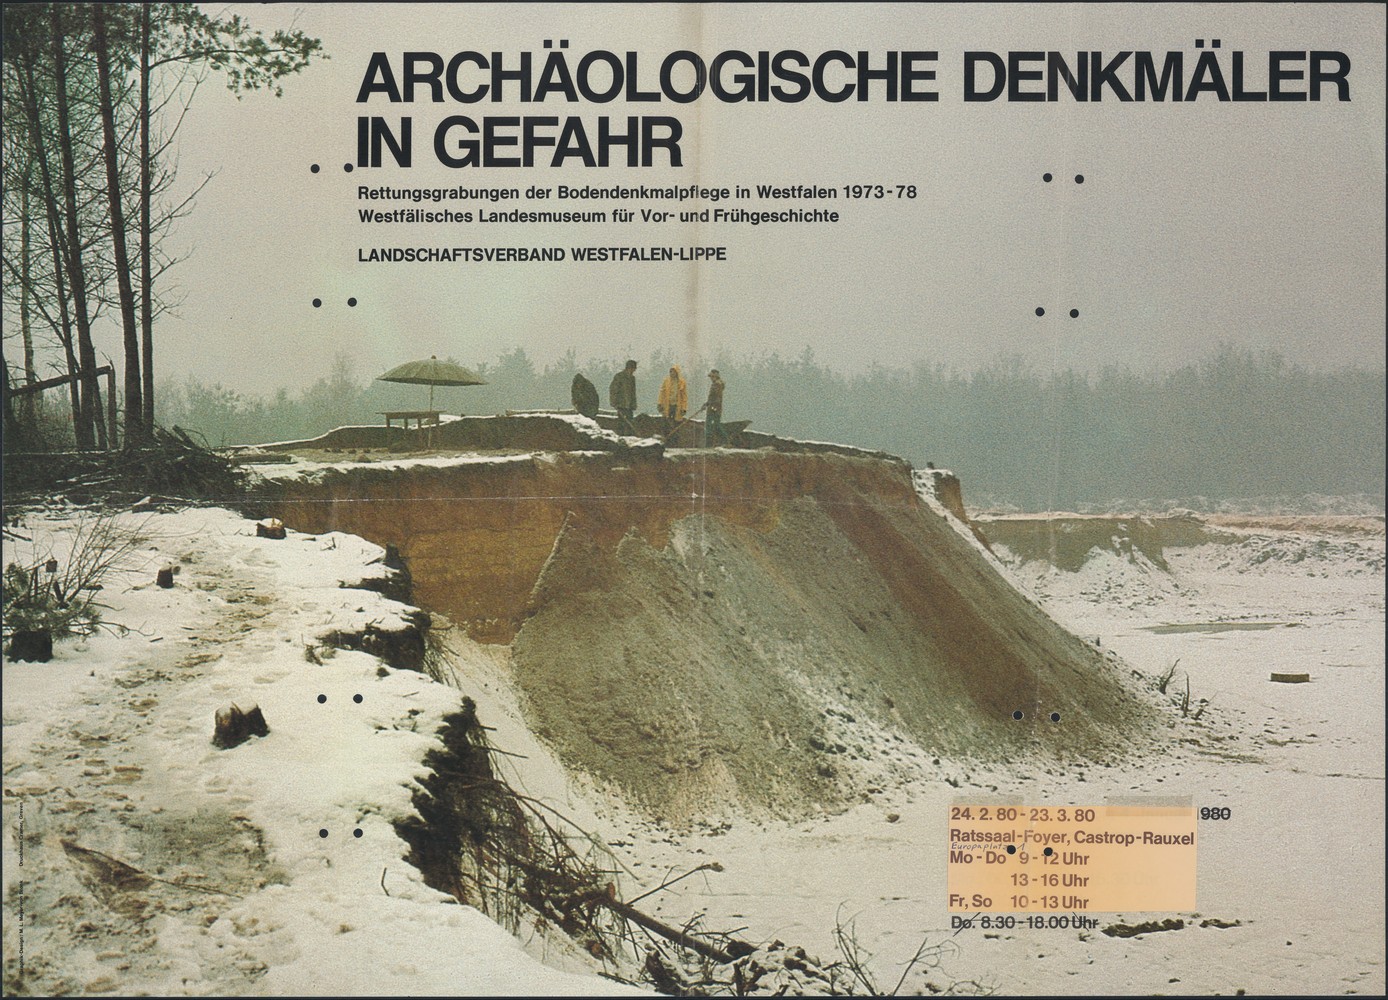 Ausgrabungen auf einer Erhöhung mit dem Schriftzug "Archäologische Denkmäler in Gefahr"